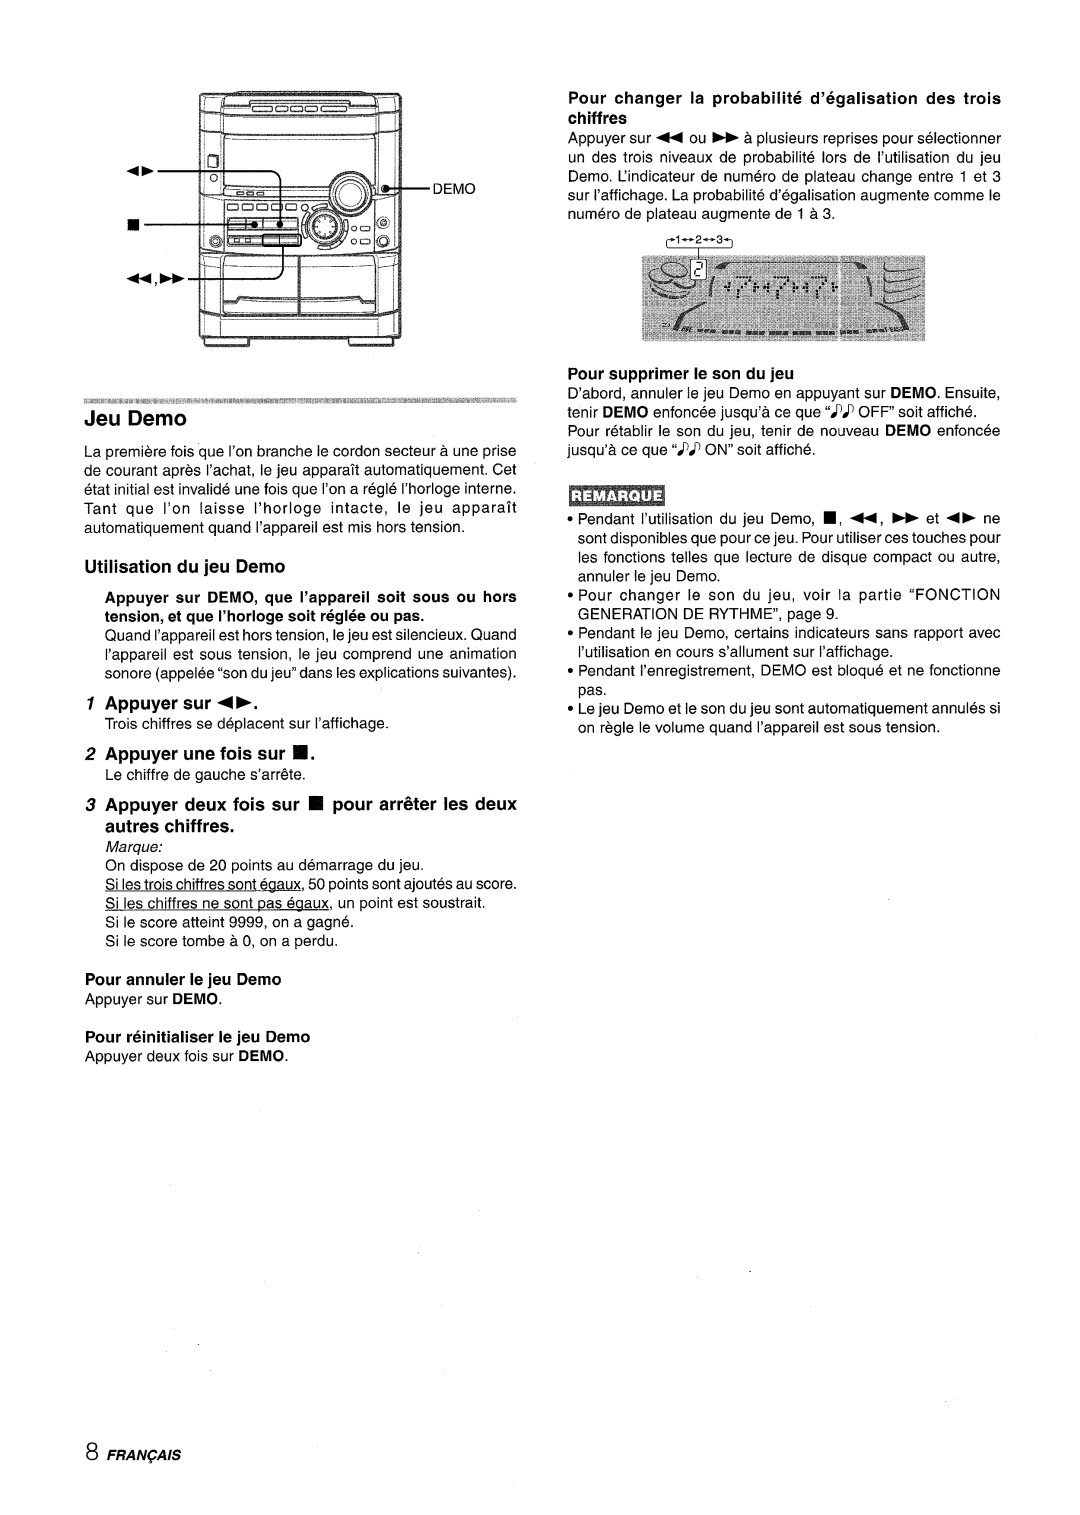 Sony NSX-A767 manual 4--II, Utilisation du jeu Demo, Appuyer sur P, Appuyer une fois sur, Pour annuler Ie jeu Demo 